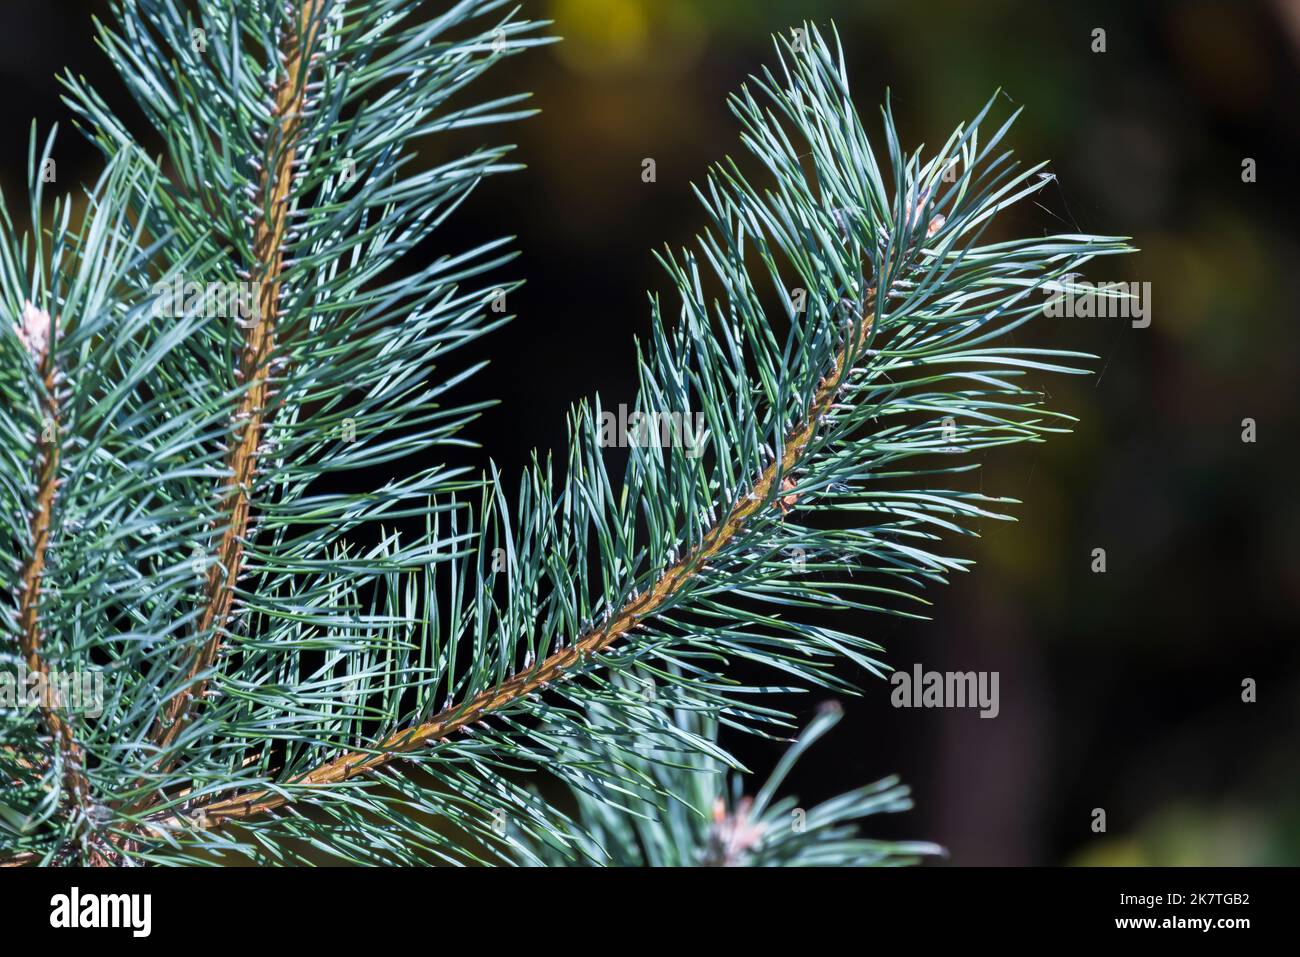 La branche de pin avec des aiguilles vertes est sur fond naturel flou. Gros plan avec mise au point douce sélective Banque D'Images